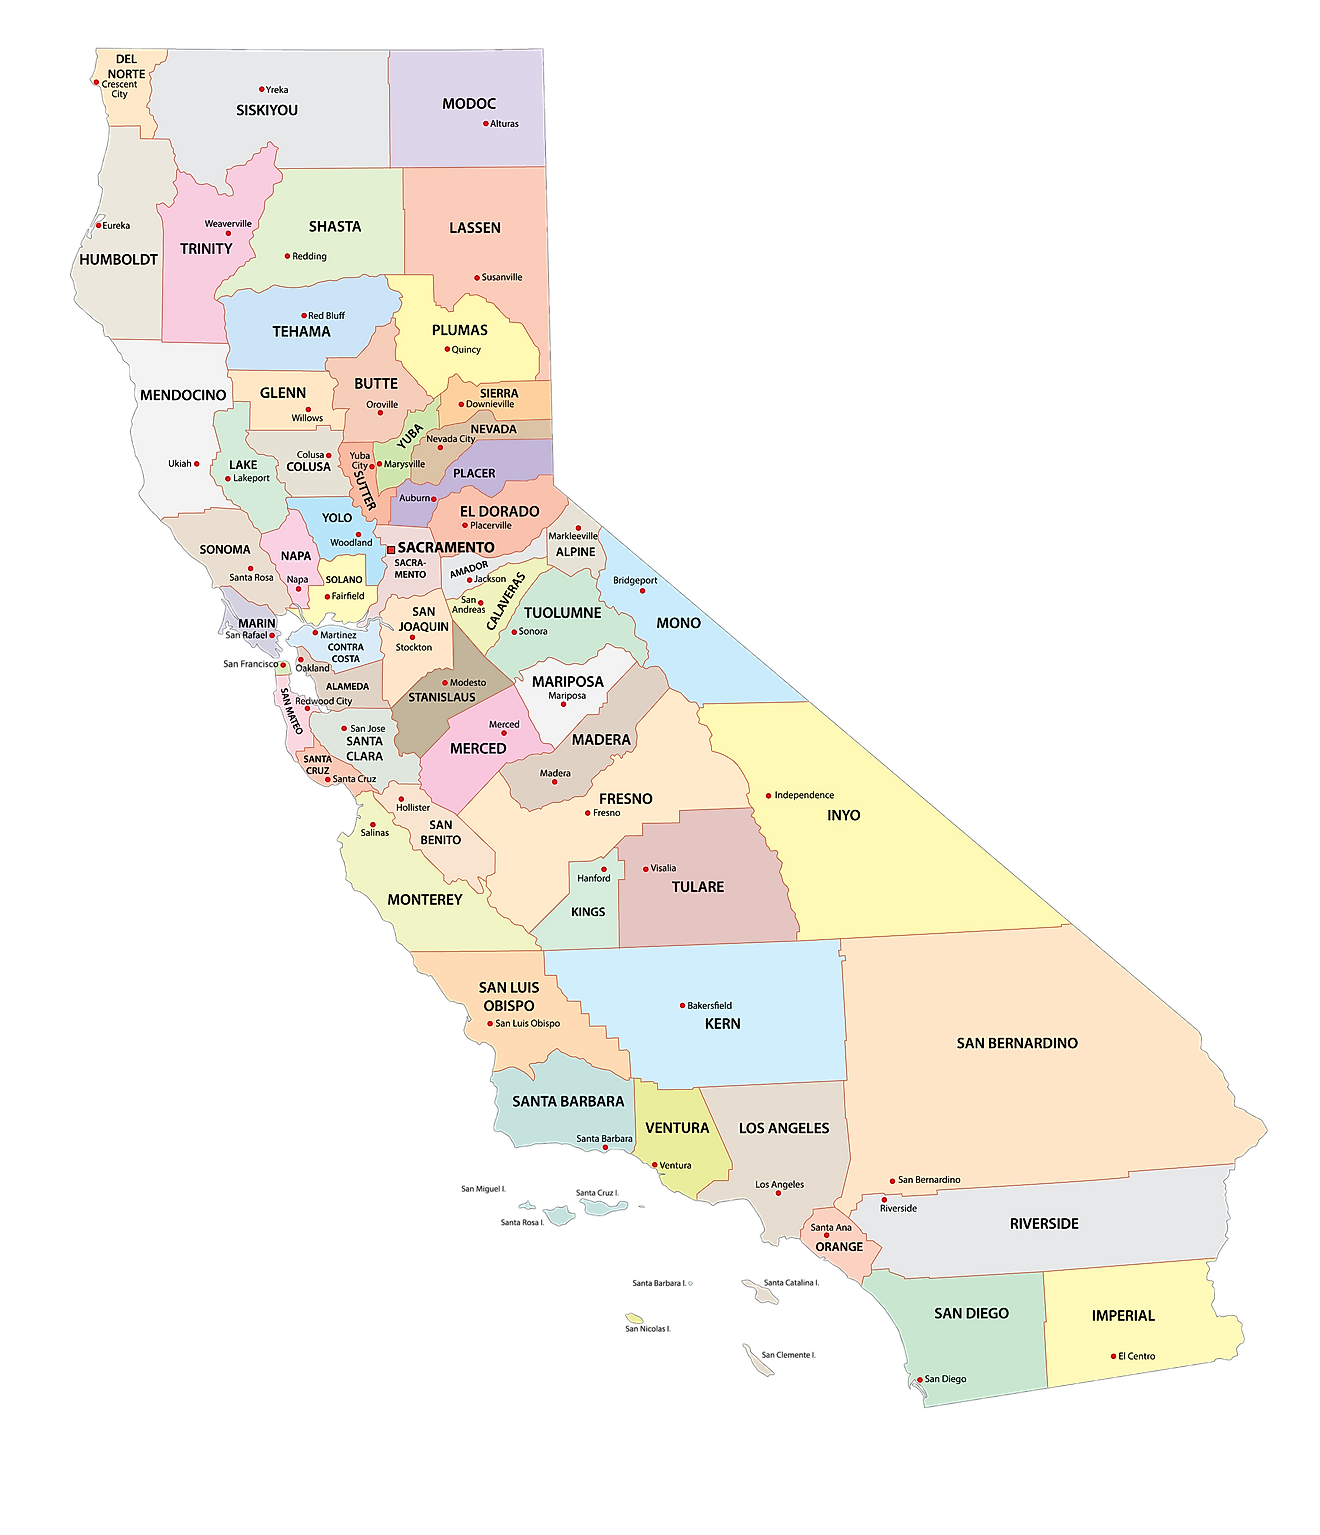 Mapa administrativo de California que muestra sus 58 condados y la ciudad capital - Sacramento